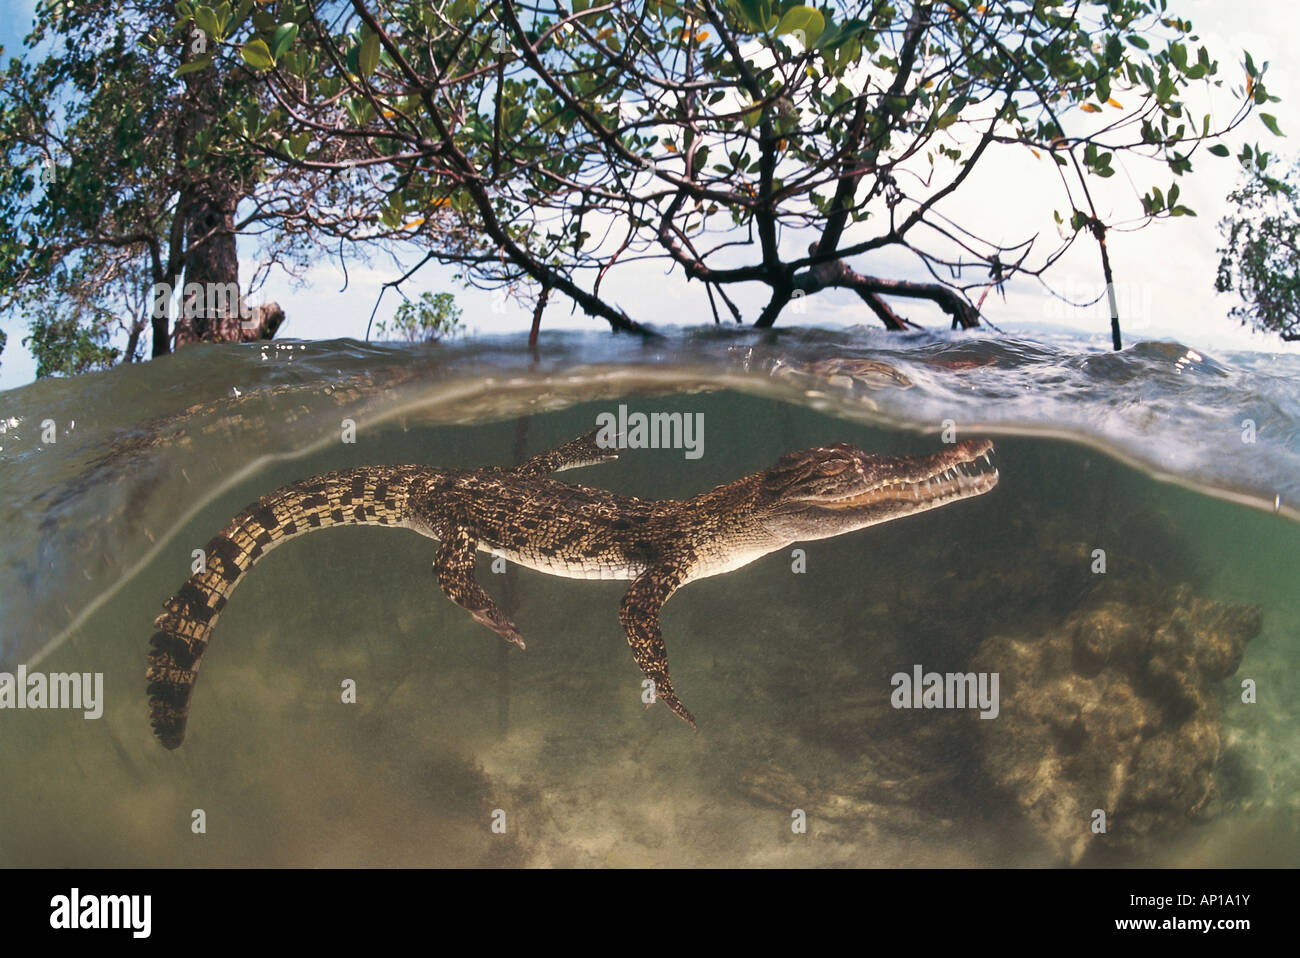 Saltwater crocodile (Crocodylus porosus), les jeunes entre les racines de mangrove Banque D'Images